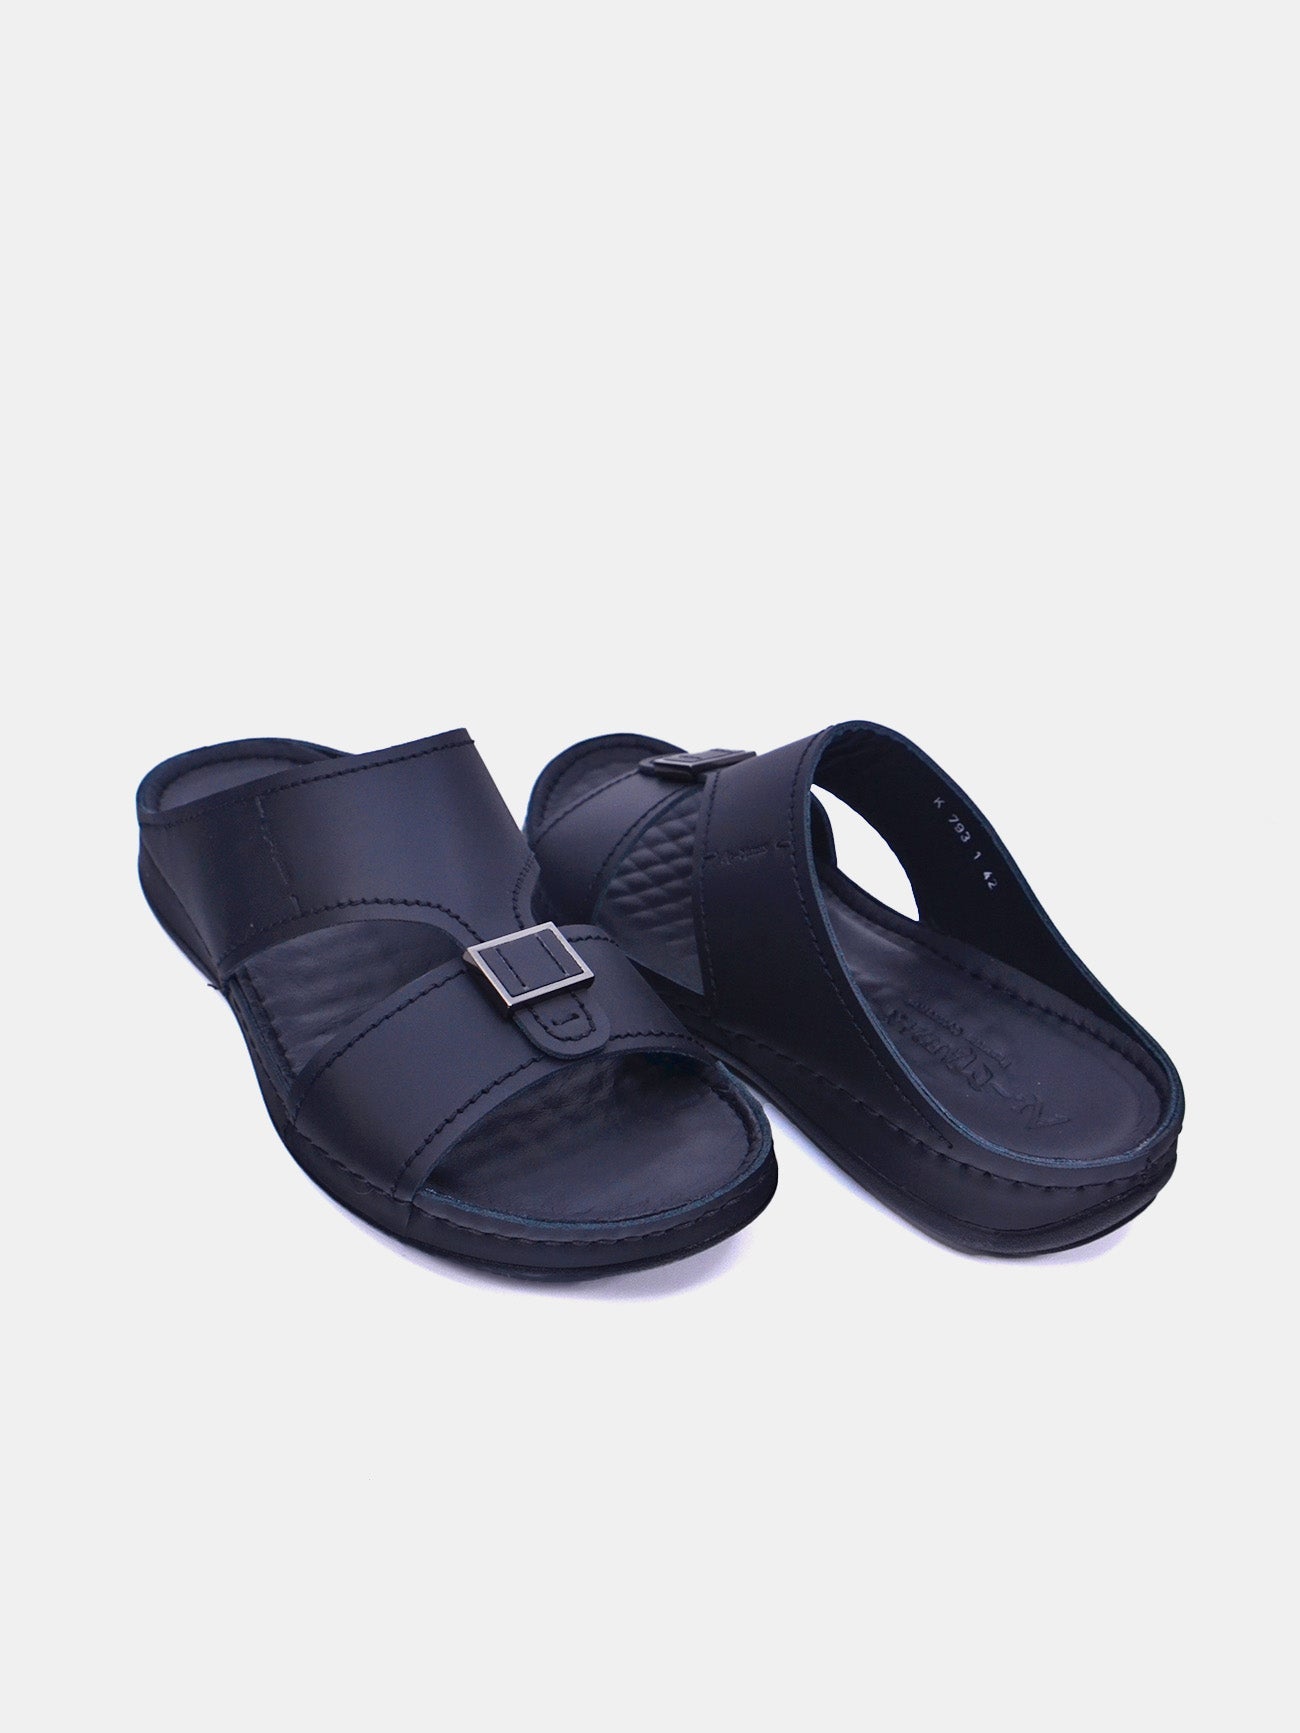 Al Maidan K-793 Men's Arabic Sandals #color_Black